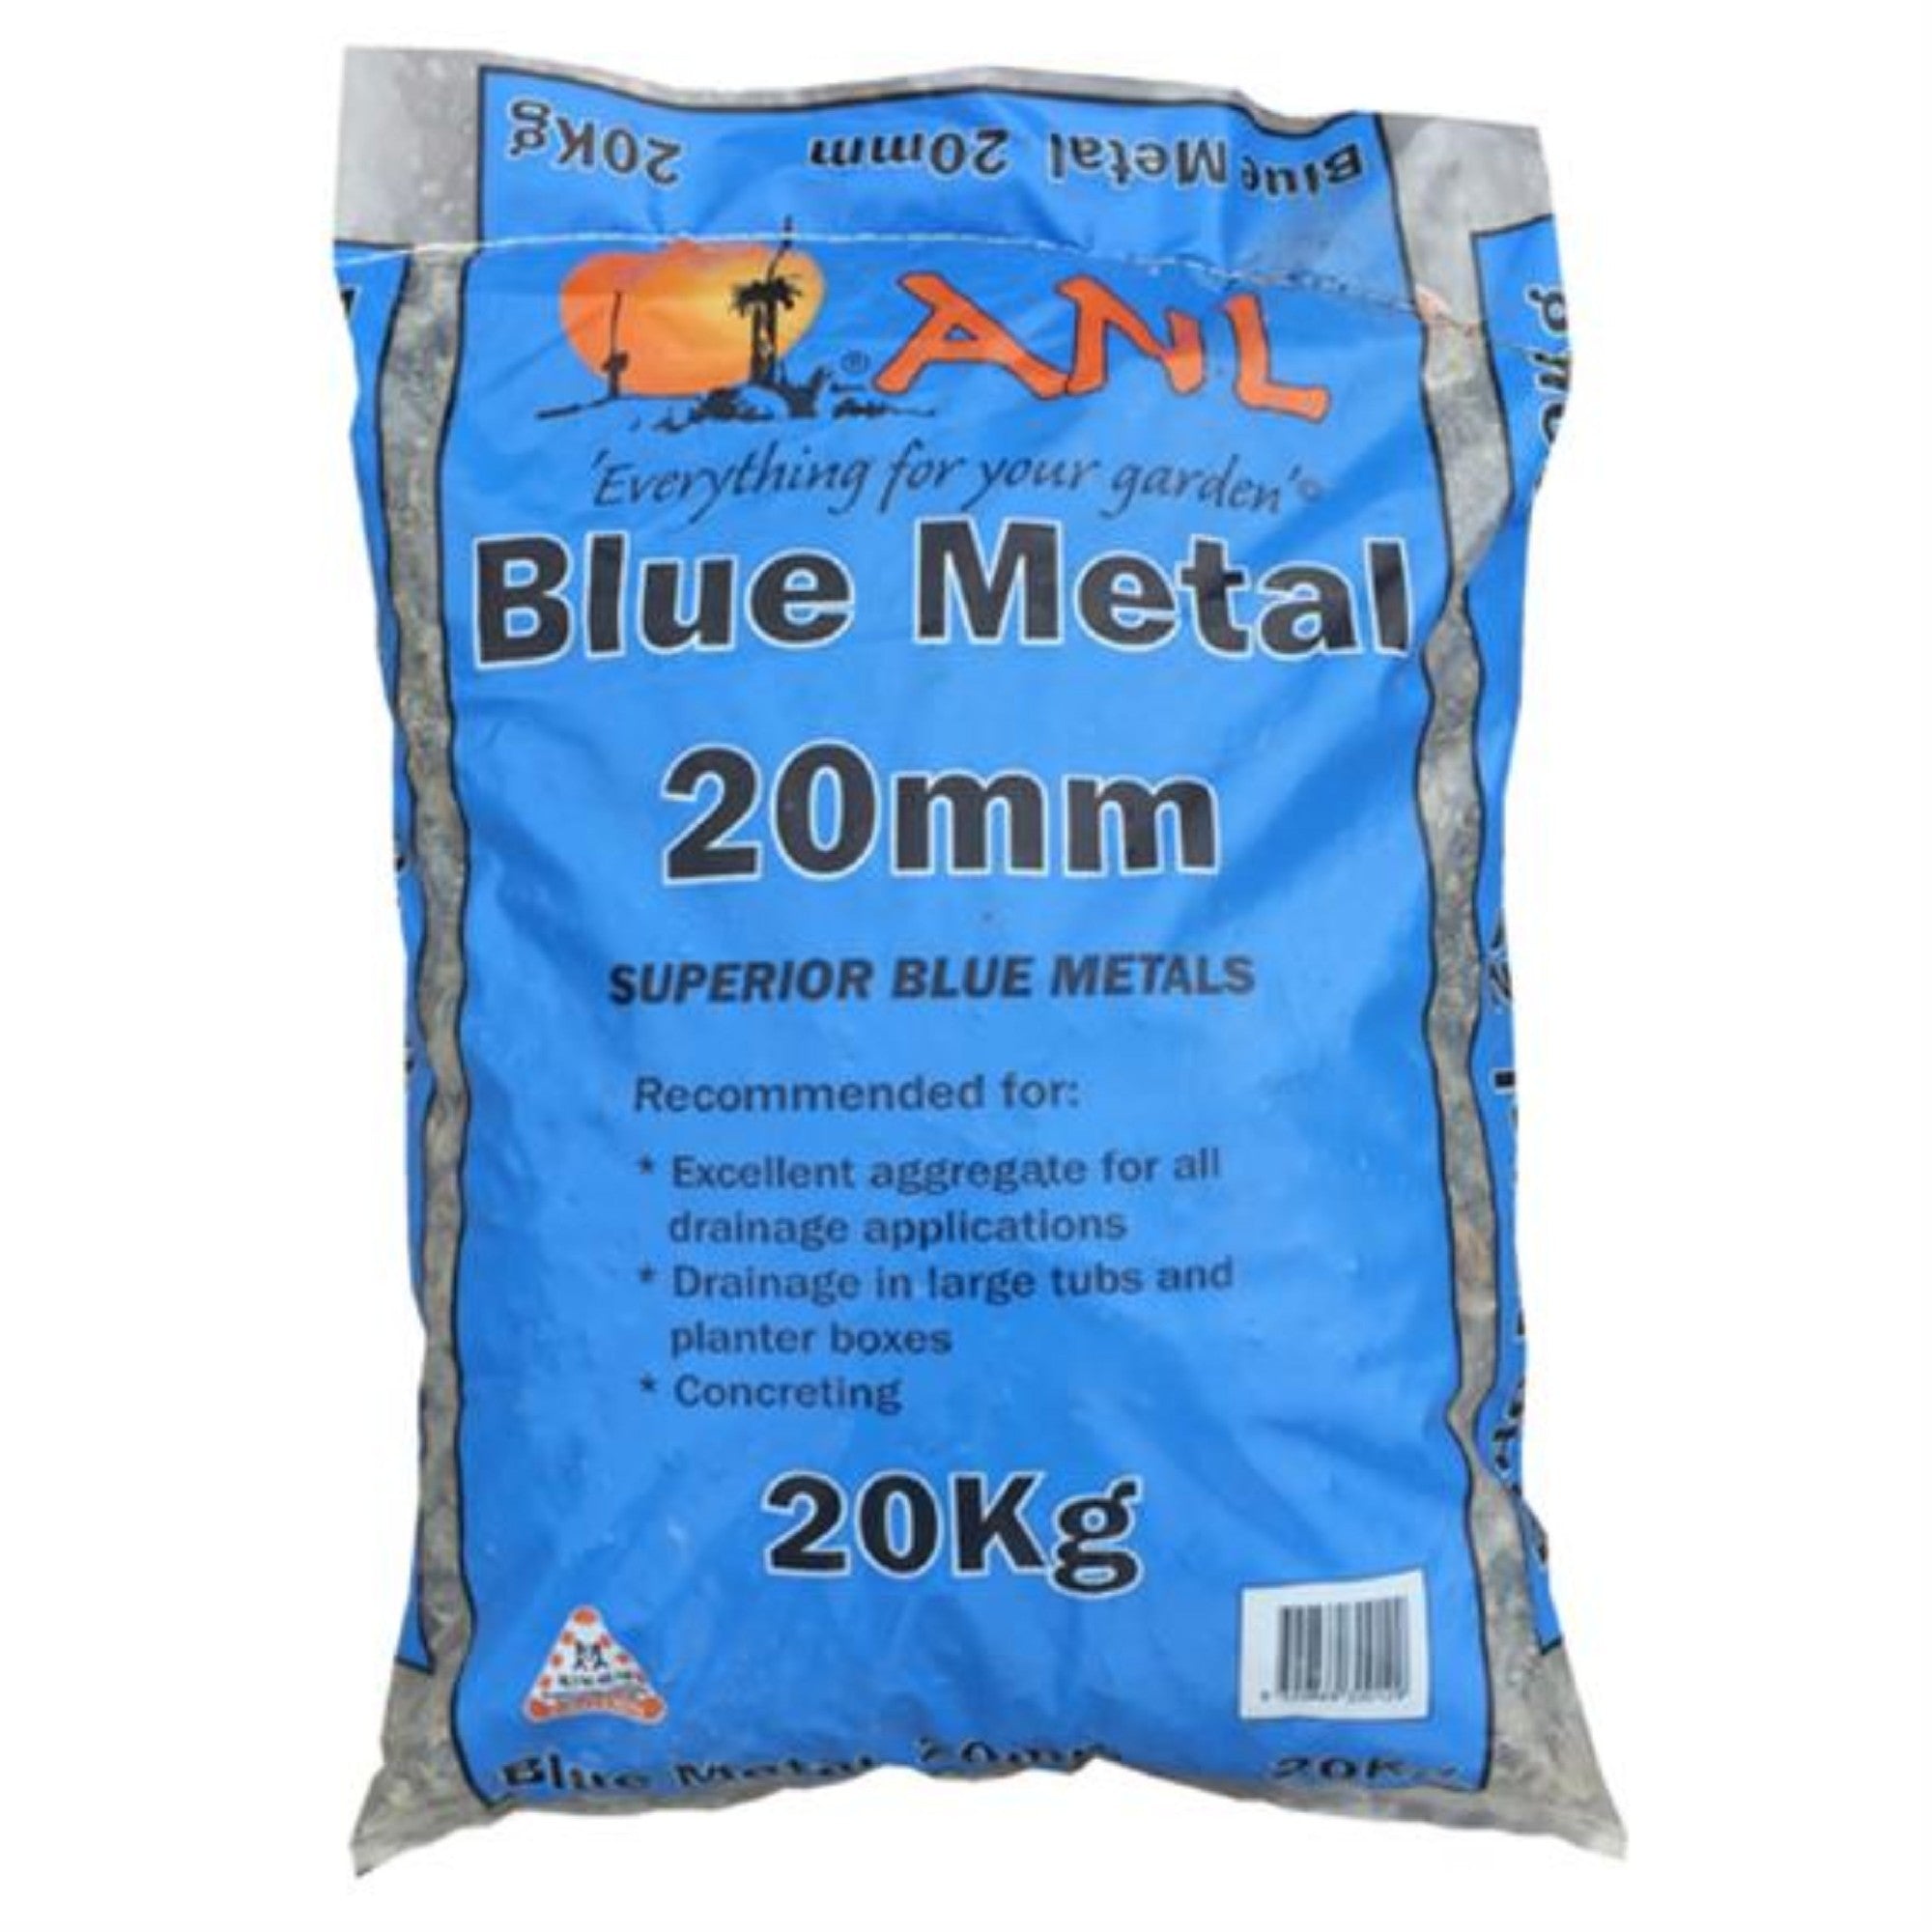 Blue Metal Anl 20mm 20kg